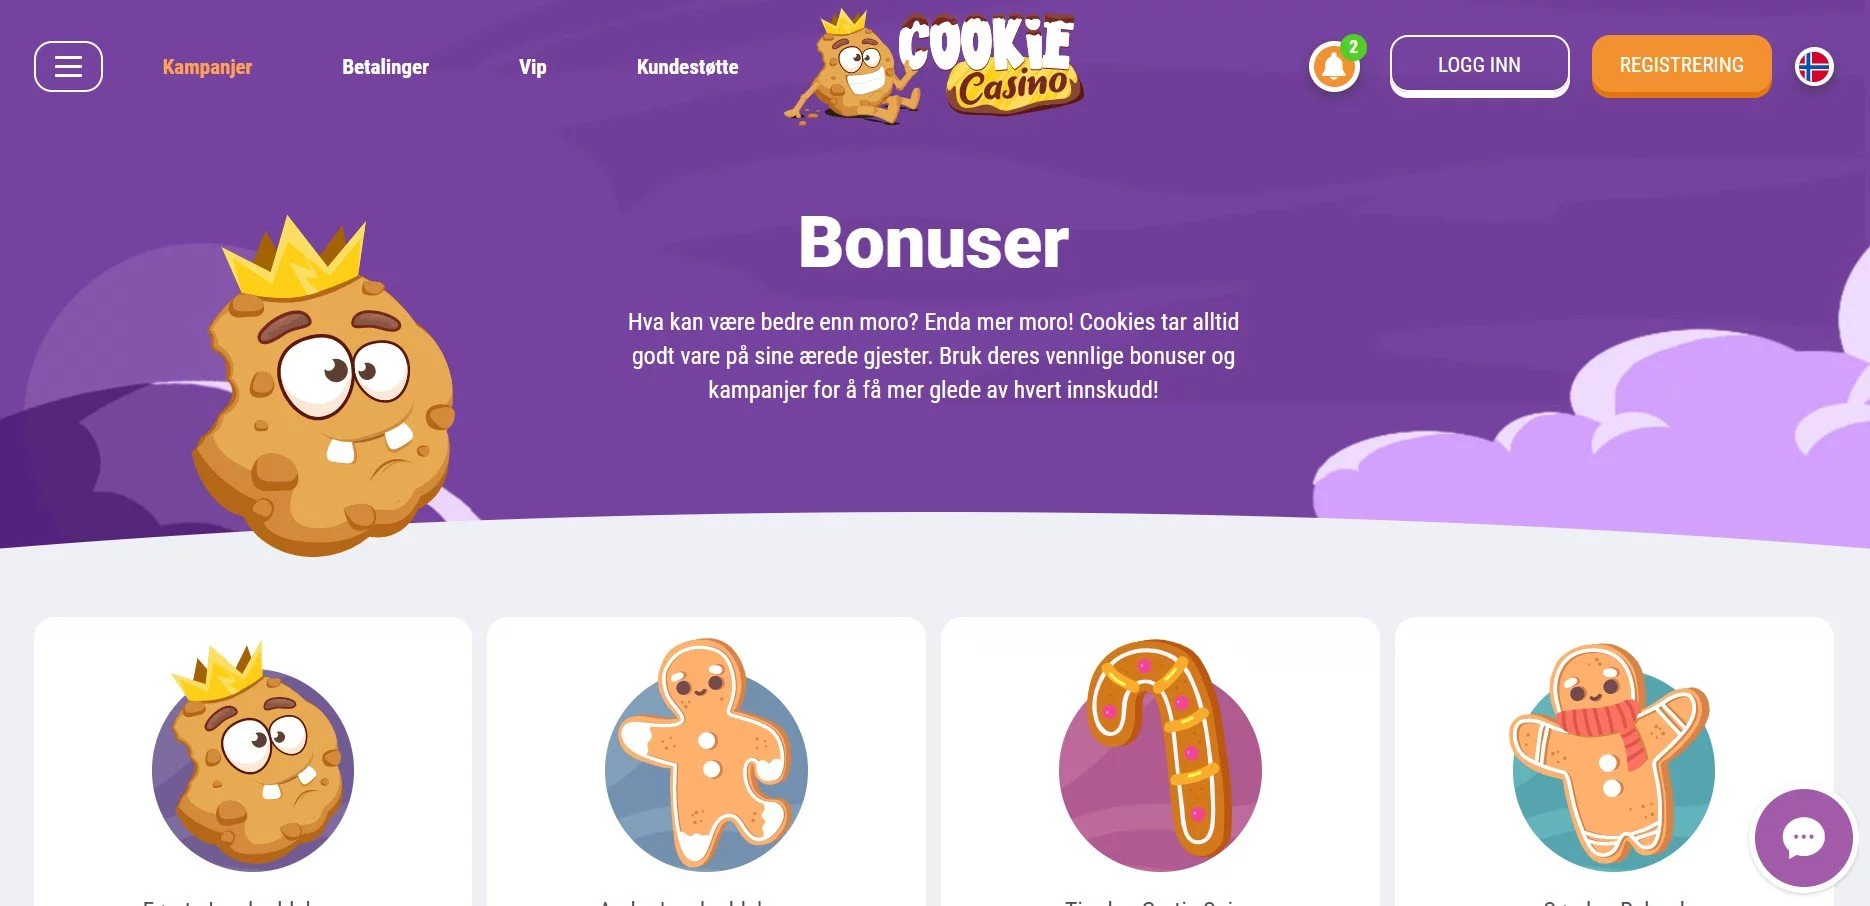 cookie casino kampanjer og bonuser